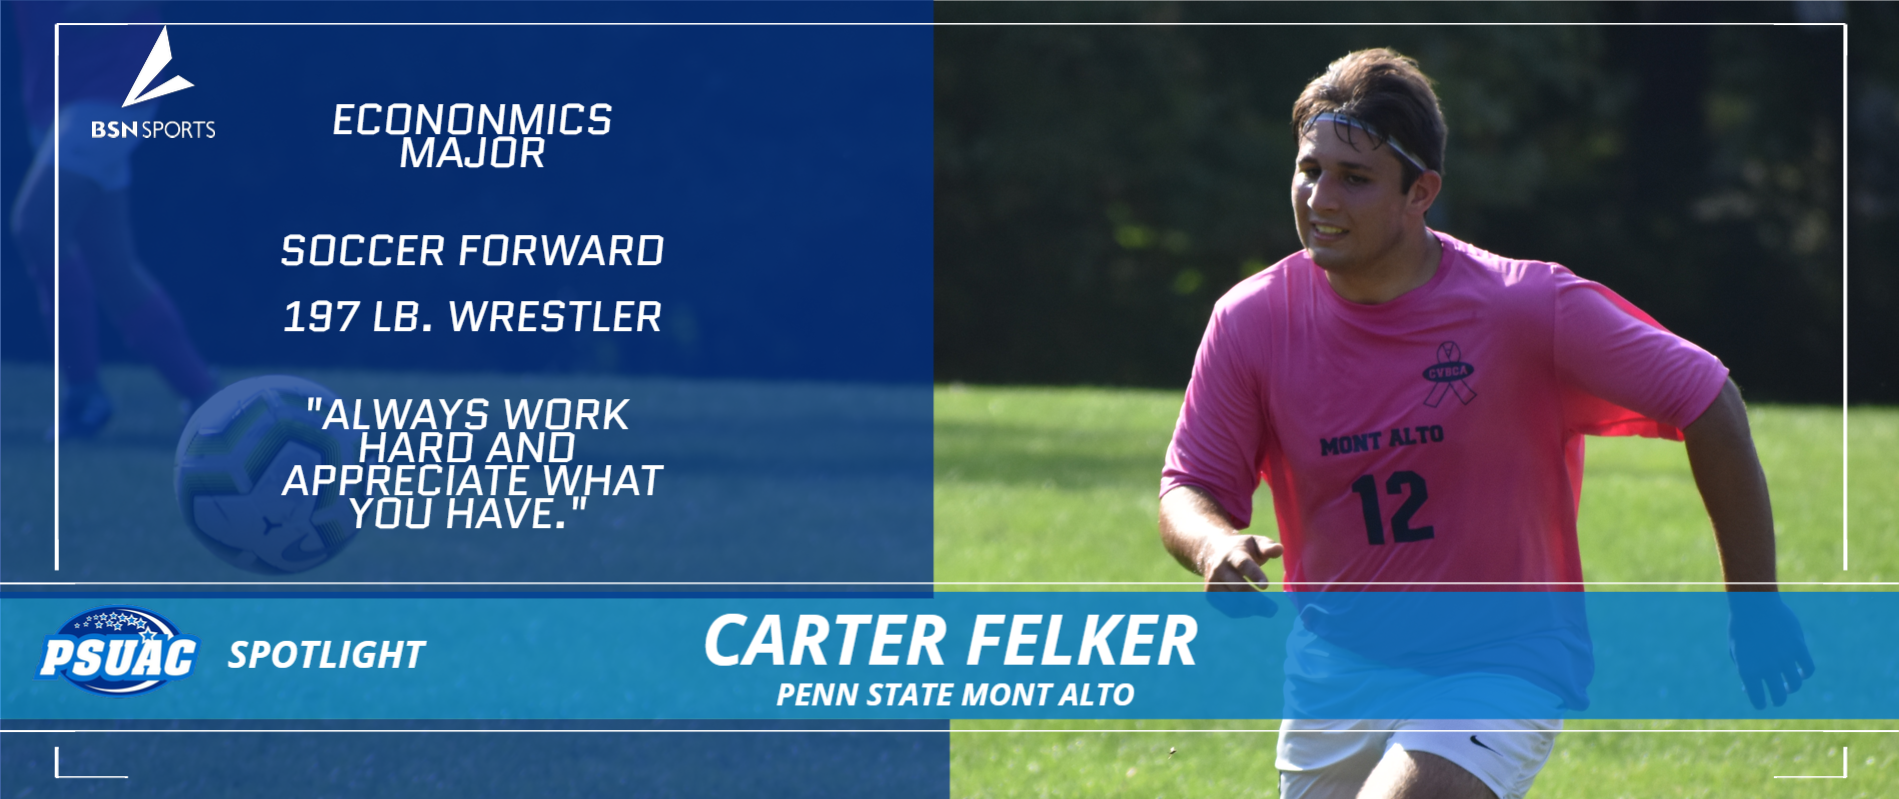 Penn State Mont Alto's Carter Felker.